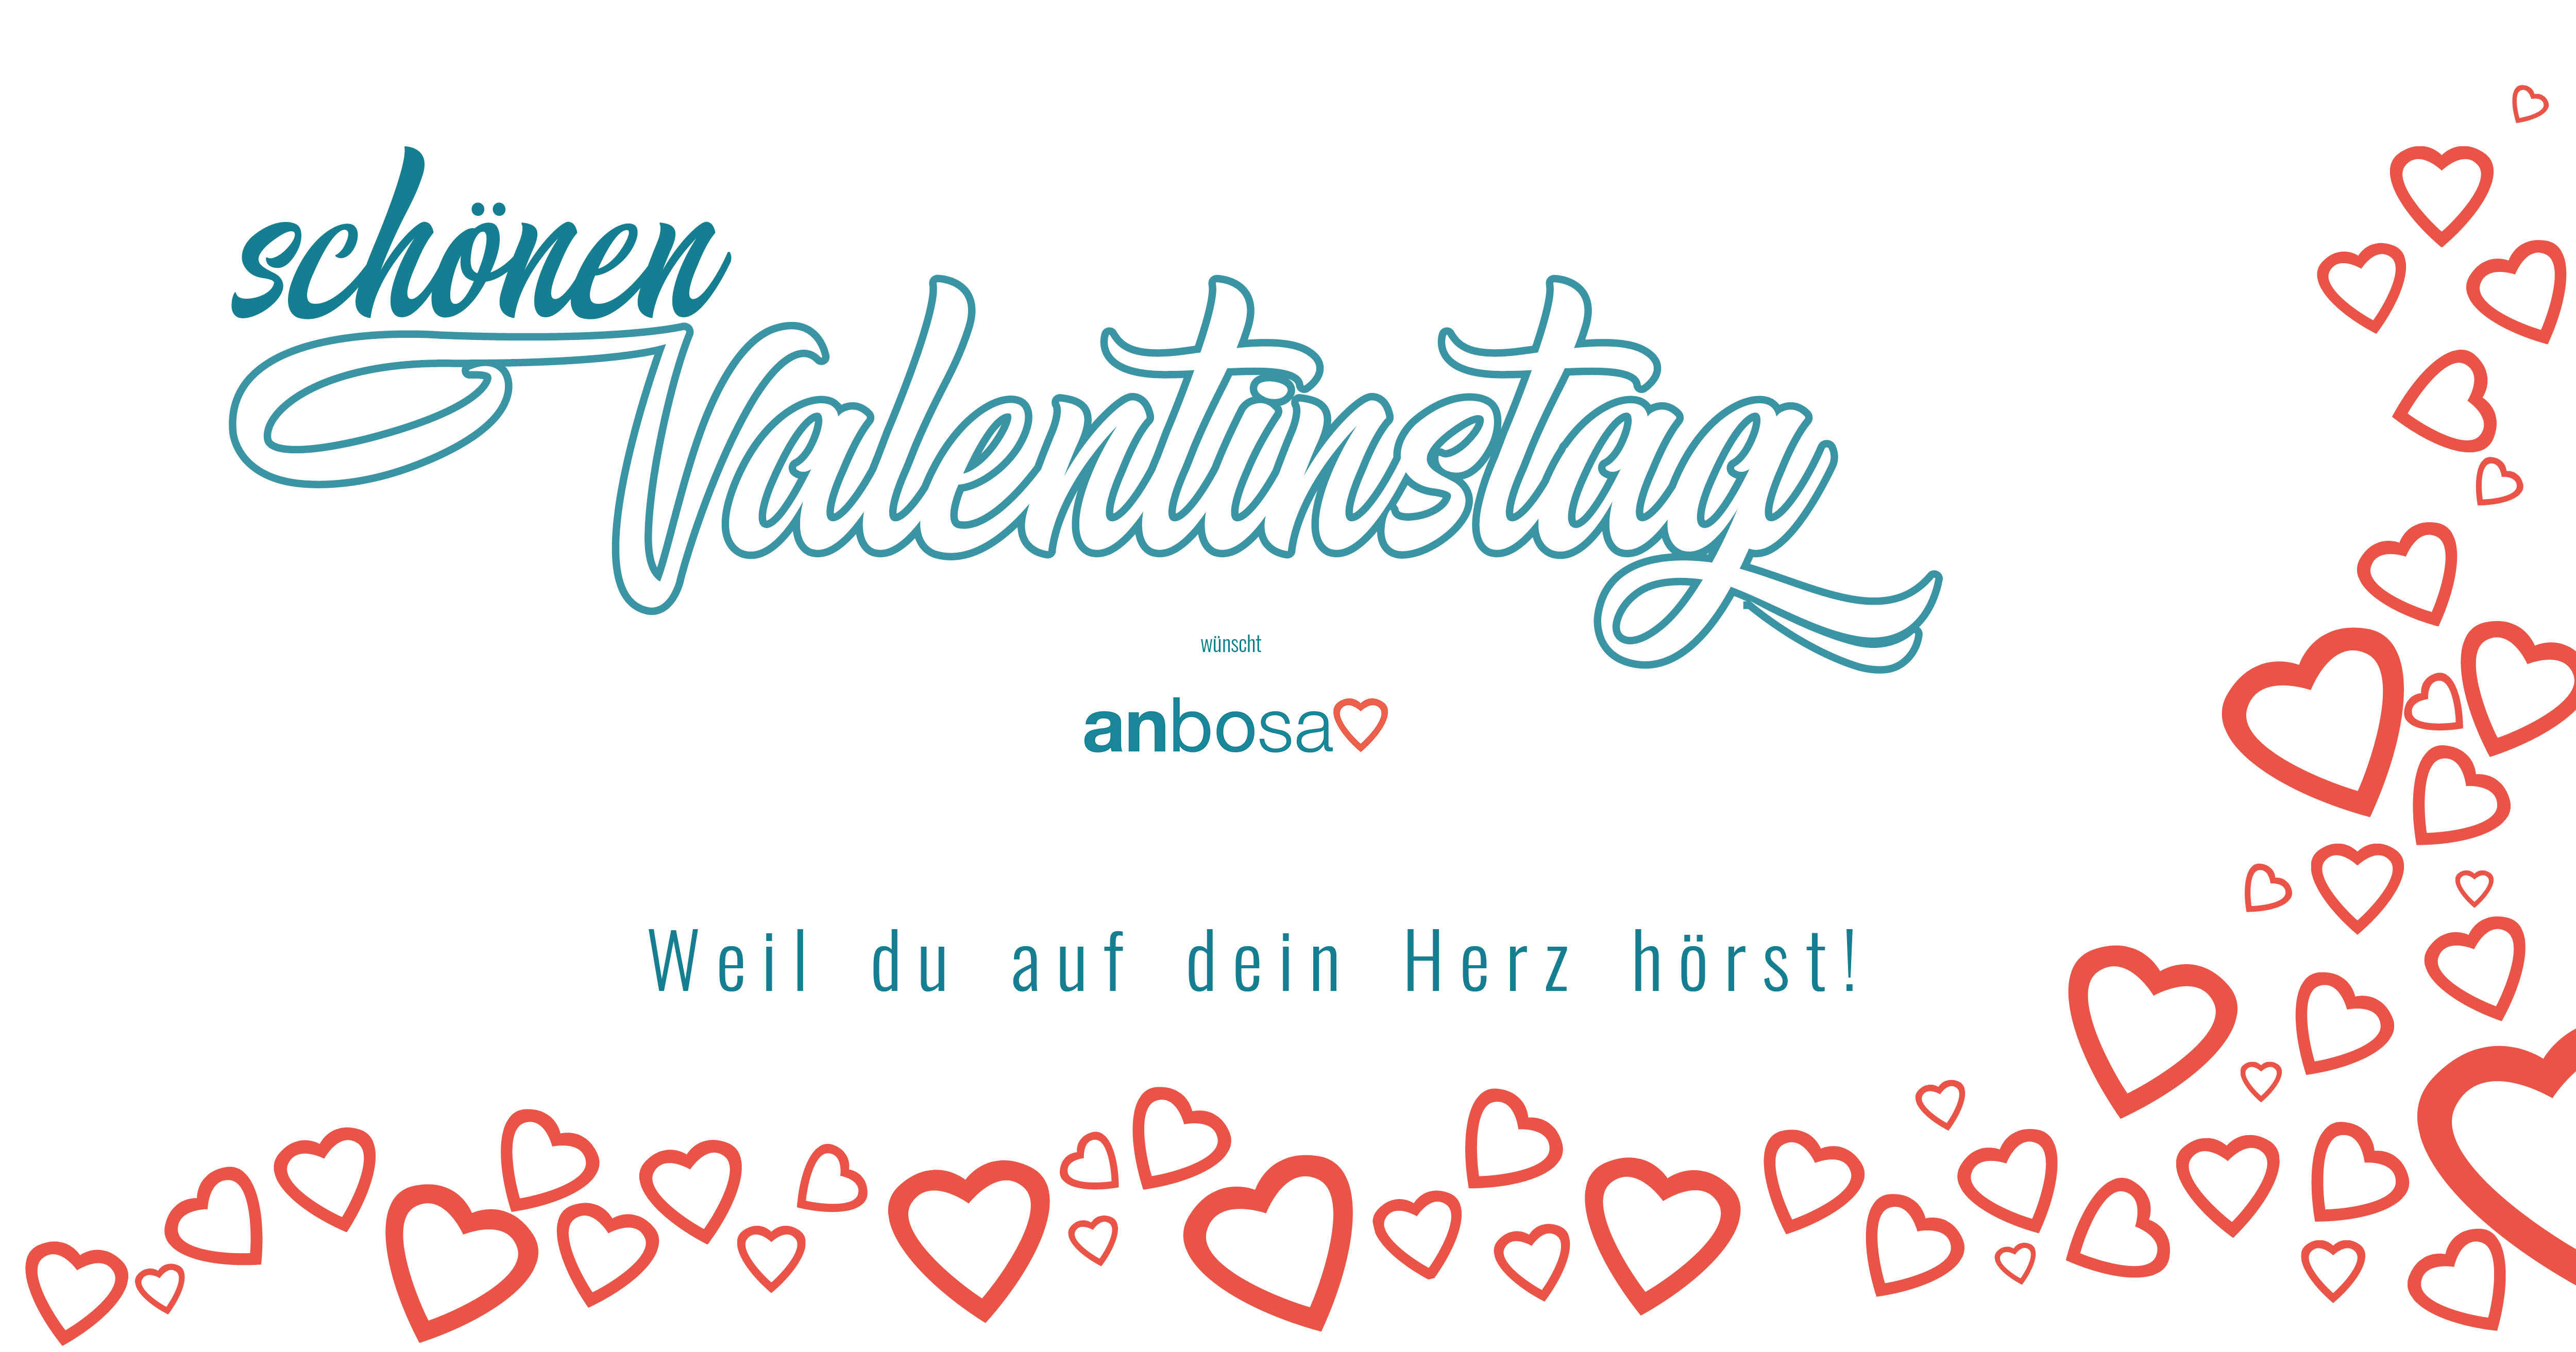 anbosa wünscht einen schönen Valentinstag